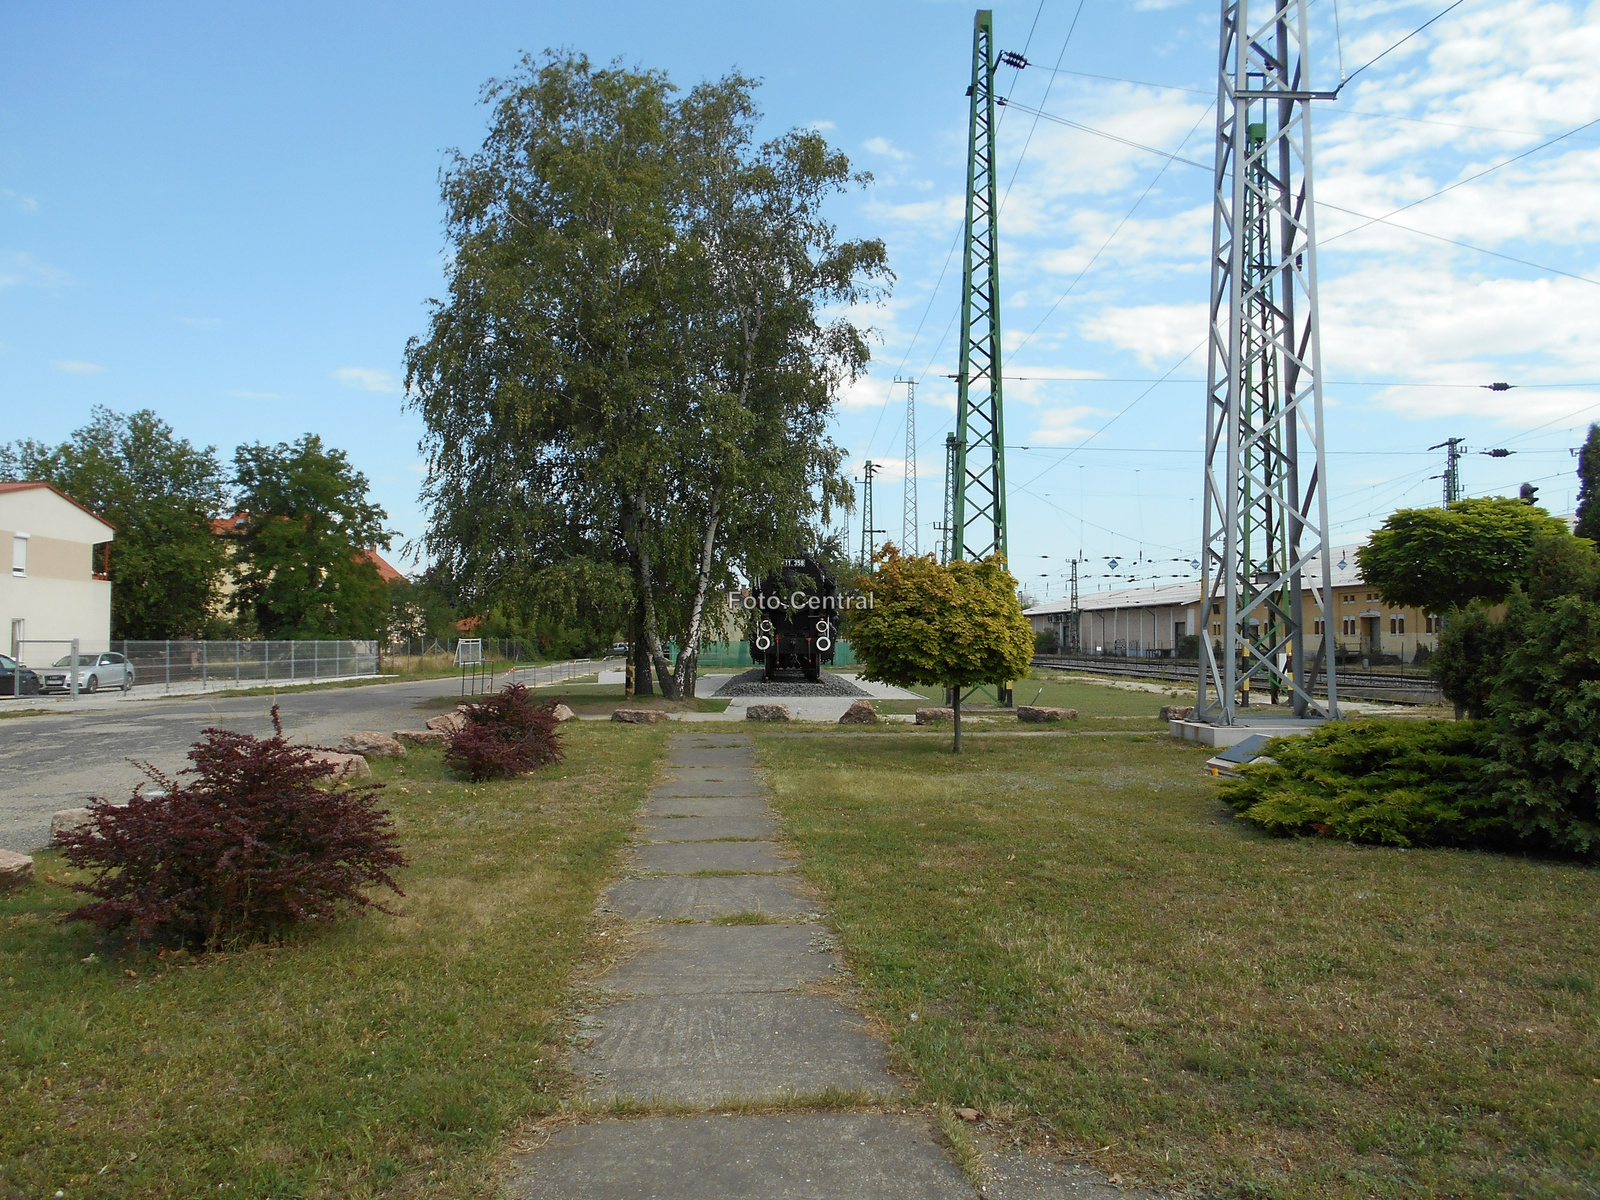 A vasútállomás mellett lévő emlékpark.